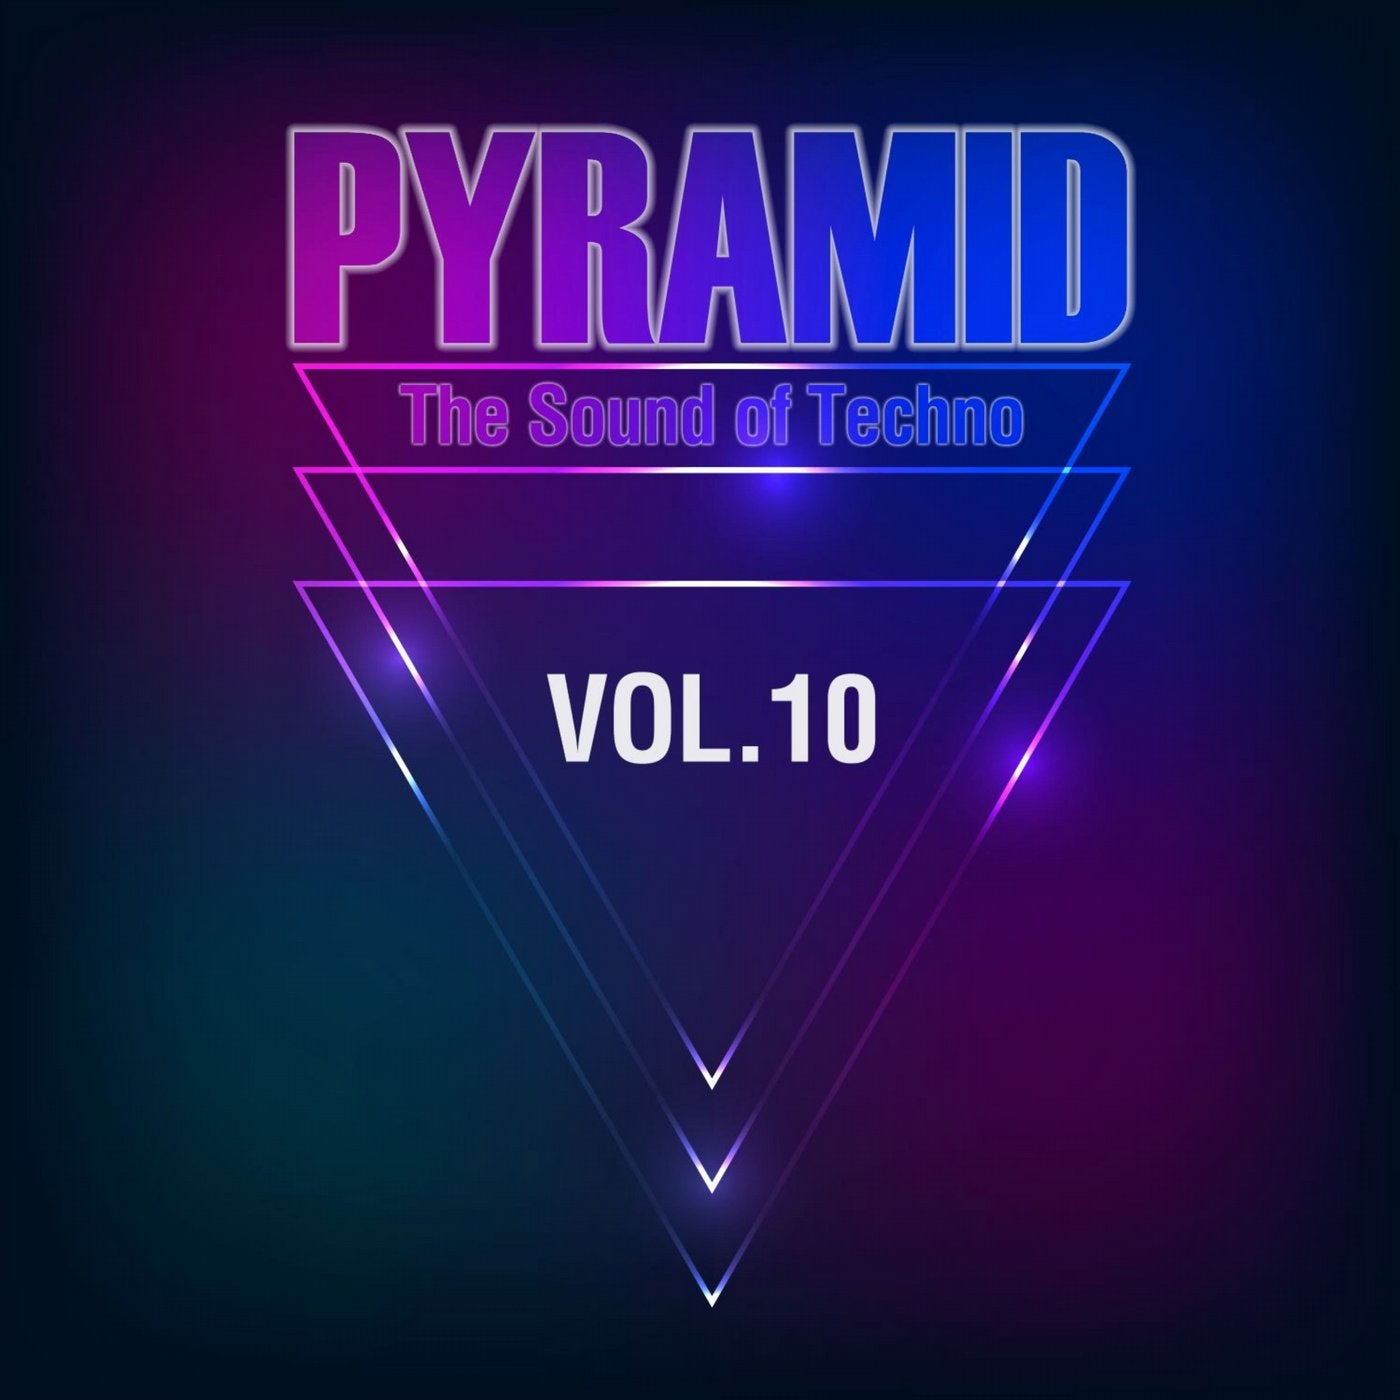 Pyramid, Vol. 10 (The Sound of Techno)